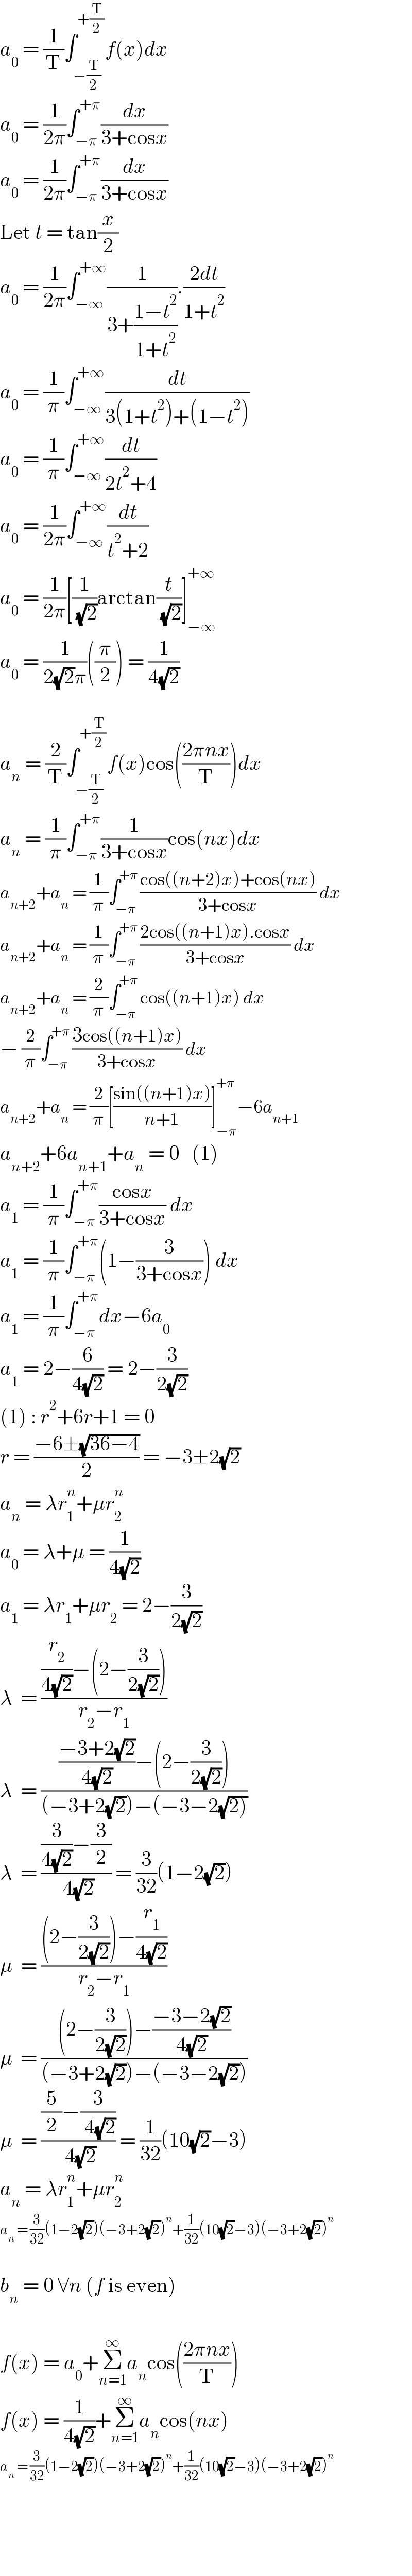 a_0  = (1/T)∫_(−(T/2)) ^(+(T/2)) f(x)dx  a_0  = (1/(2π))∫_(−π) ^(+π) (dx/(3+cosx))  a_0  = (1/(2π))∫_(−π) ^(+π) (dx/(3+cosx))  Let t = tan(x/2)  a_0  = (1/(2π))∫_(−∞) ^(+∞) (1/(3+((1−t^2 )/(1+t^2 )))).((2dt)/(1+t^2 ))  a_0  = (1/π)∫_(−∞) ^(+∞) (dt/(3(1+t^2 )+(1−t^2 )))  a_0  = (1/π)∫_(−∞) ^(+∞) (dt/(2t^2 +4))  a_0  = (1/(2π))∫_(−∞) ^(+∞) (dt/(t^2 +2))  a_0  = (1/(2π))[(1/( (√2)))arctan(t/( (√2)))]_(−∞) ^(+∞)   a_0  = (1/(2(√2)π))((π/2)) = (1/(4(√2)))    a_n  = (2/T)∫_(−(T/2)) ^(+(T/2)) f(x)cos(((2πnx)/T))dx  a_n  = (1/π)∫_(−π) ^(+π) (1/(3+cosx))cos(nx)dx  a_(n+2) +a_n  = (1/π)∫_(−π) ^(+π) ((cos((n+2)x)+cos(nx))/(3+cosx)) dx  a_(n+2) +a_n  = (1/π)∫_(−π) ^(+π) ((2cos((n+1)x).cosx)/(3+cosx)) dx  a_(n+2) +a_n  = (2/π)∫_(−π) ^(+π) cos((n+1)x) dx  − (2/π)∫_(−π) ^(+π) ((3cos((n+1)x))/(3+cosx)) dx  a_(n+2) +a_n  = (2/π)[((sin((n+1)x))/(n+1))]_(−π) ^(+π) −6a_(n+1)   a_(n+2) +6a_(n+1) +a_n  = 0   (1)  a_1  = (1/π)∫_(−π) ^(+π) ((cosx)/(3+cosx)) dx  a_1  = (1/π)∫_(−π) ^(+π) (1−(3/(3+cosx))) dx  a_1  = (1/π)∫_(−π) ^(+π) dx−6a_0   a_1  = 2−(6/(4(√2))) = 2−(3/(2(√2)))  (1) : r^2 +6r+1 = 0  r = ((−6±(√(36−4)))/2) = −3±2(√2)  a_n  = λr_1 ^n +μr_2 ^n   a_0  = λ+μ = (1/(4(√2)))  a_1  = λr_1 +μr_2  = 2−(3/(2(√2)))  λ  = (((r_2 /(4(√2)))−(2−(3/(2(√2)))))/(r_2 −r_1 ))  λ  = ((((−3+2(√2))/(4(√2)))−(2−(3/(2(√2)))))/((−3+2(√2))−(−3−2(√(2)))))  λ  = (((3/(4(√2)))−(3/2))/( 4(√2))) = (3/(32))(1−2(√2))  μ  = (((2−(3/(2(√2))))−(r_1 /(4(√2))))/(r_2 −r_1 ))  μ  = (((2−(3/(2(√2))))−((−3−2(√2))/(4(√2))))/((−3+2(√2))−(−3−2(√2))))  μ  = (((5/2)−(3/( 4(√2))))/( 4(√2))) = (1/(32))(10(√2)−3)  a_n  = λr_1 ^n +μr_2 ^n   a_n  = (3/(32))(1−2(√2))(−3+2(√2))^n +(1/(32))(10(√2)−3)(−3+2(√2))^n     b_n  = 0 ∀n (f is even)    f(x) = a_0 +Σ_(n=1) ^∞ a_n cos(((2πnx)/T))  f(x) = (1/(4(√2)))+Σ_(n=1) ^∞ a_n cos(nx)  a_n  = (3/(32))(1−2(√2))(−3+2(√2))^n +(1/(32))(10(√2)−3)(−3+2(√2))^n       